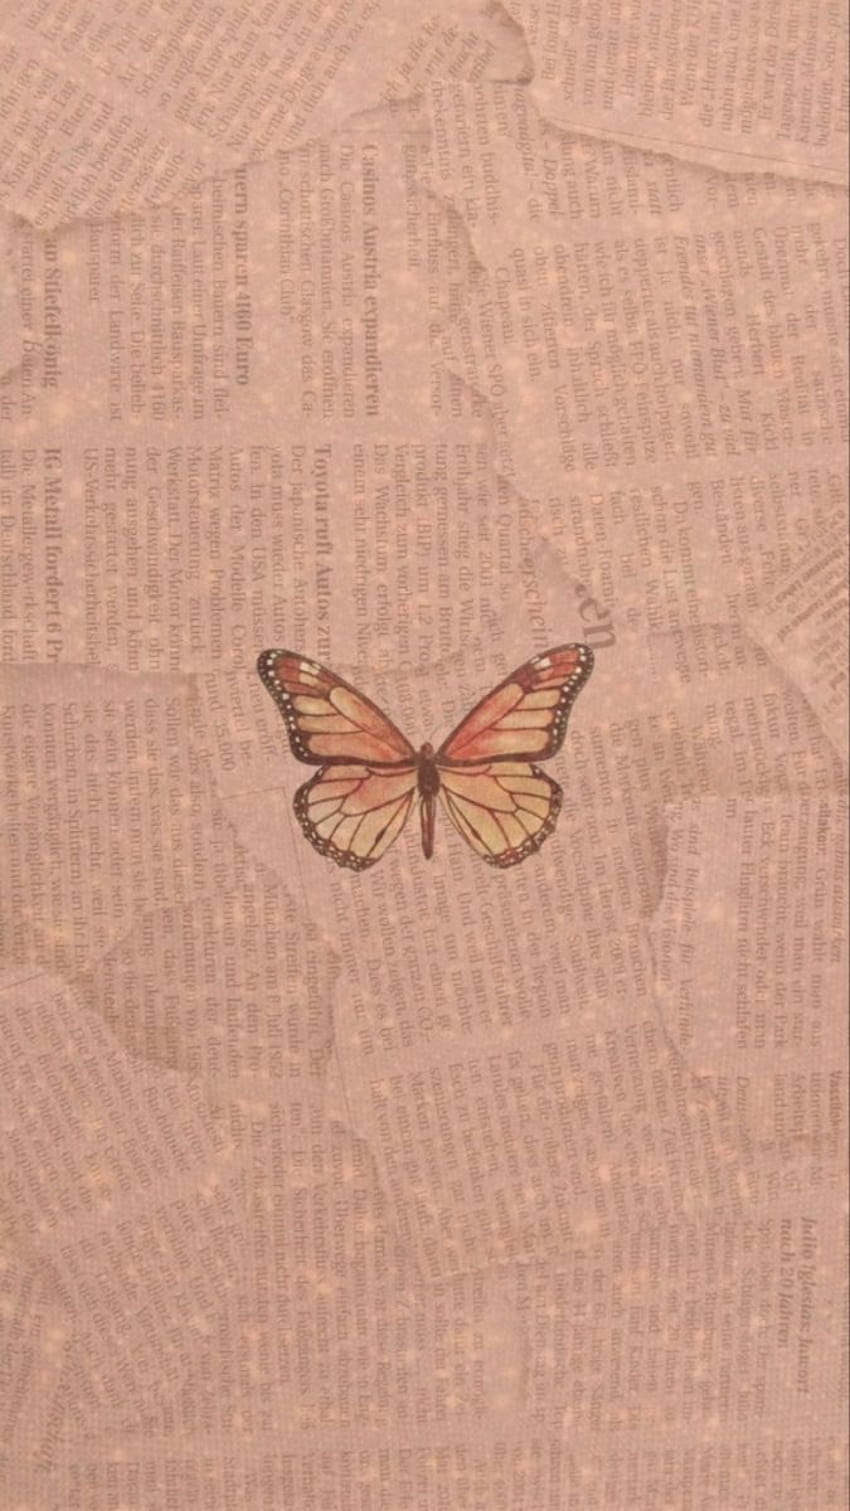 100 Butterflies Laptop Wallpapers  Wallpaperscom